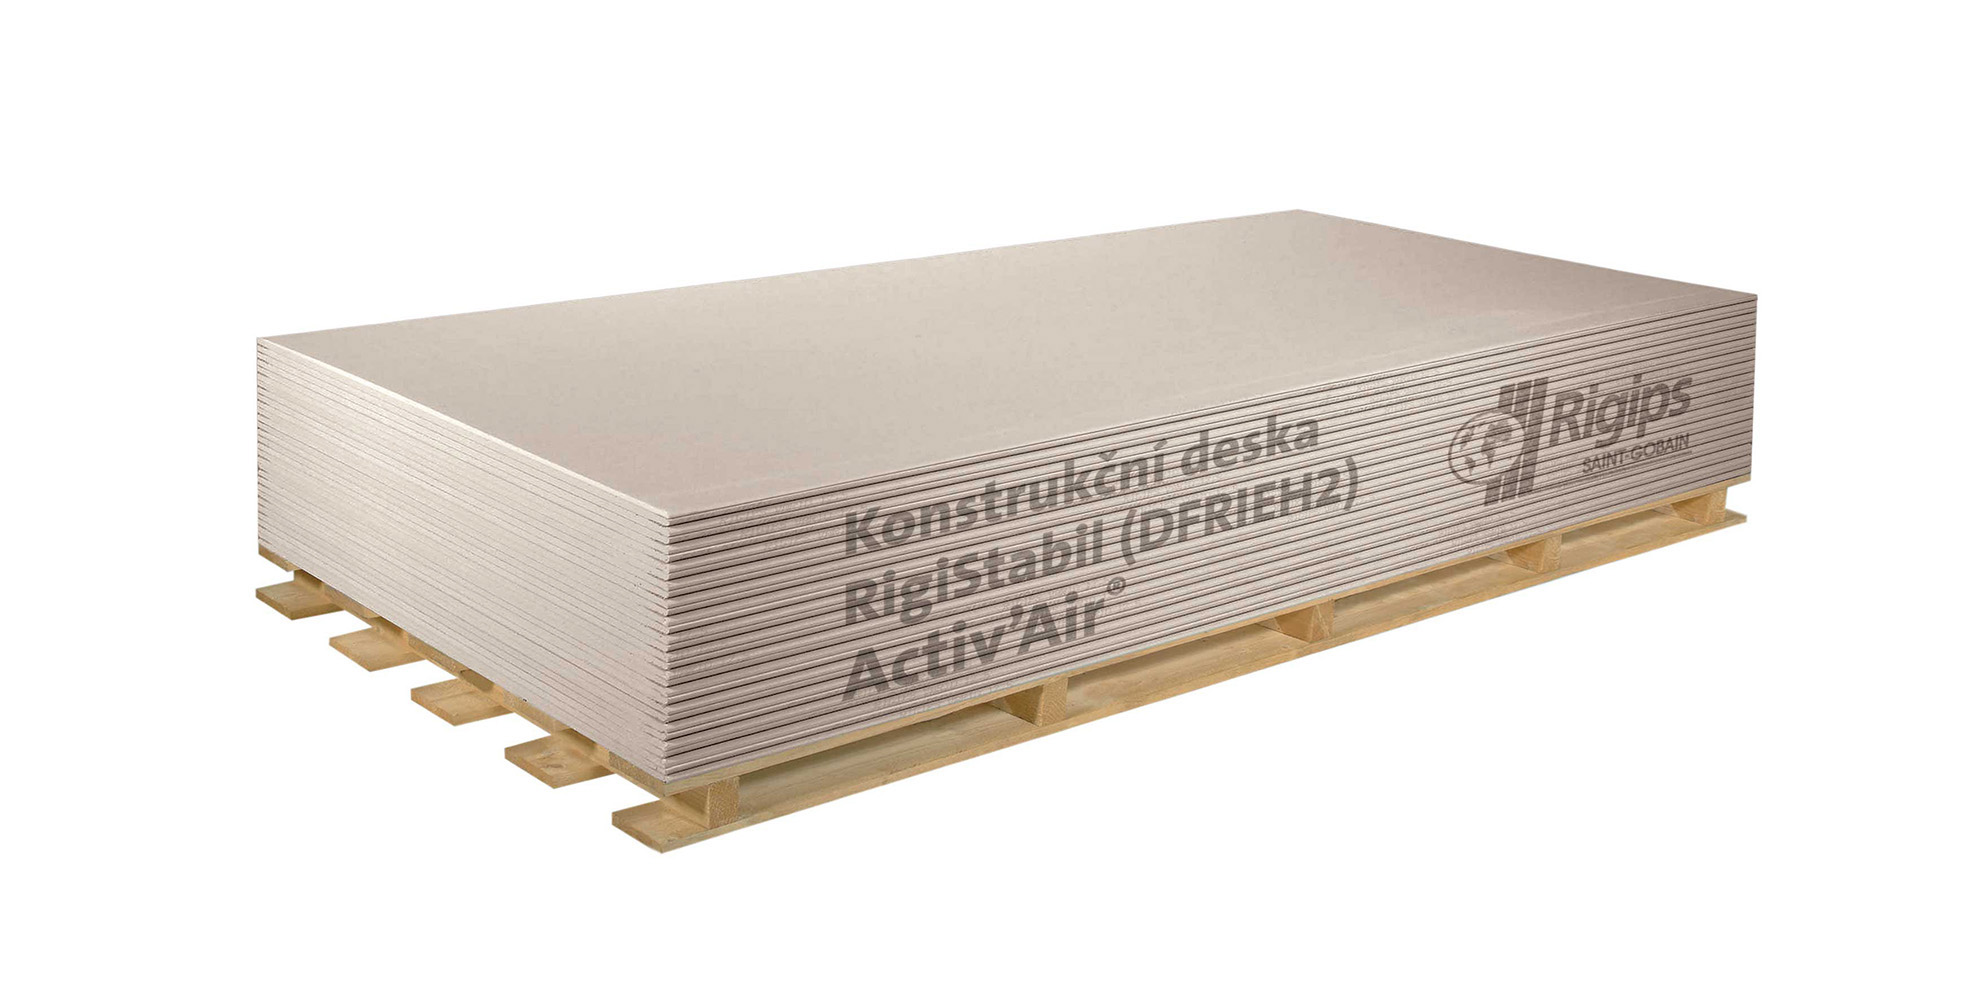 Deska sádrokartonová Rigips RigiStabil Activ' Air 12,5×1250×2750 mm